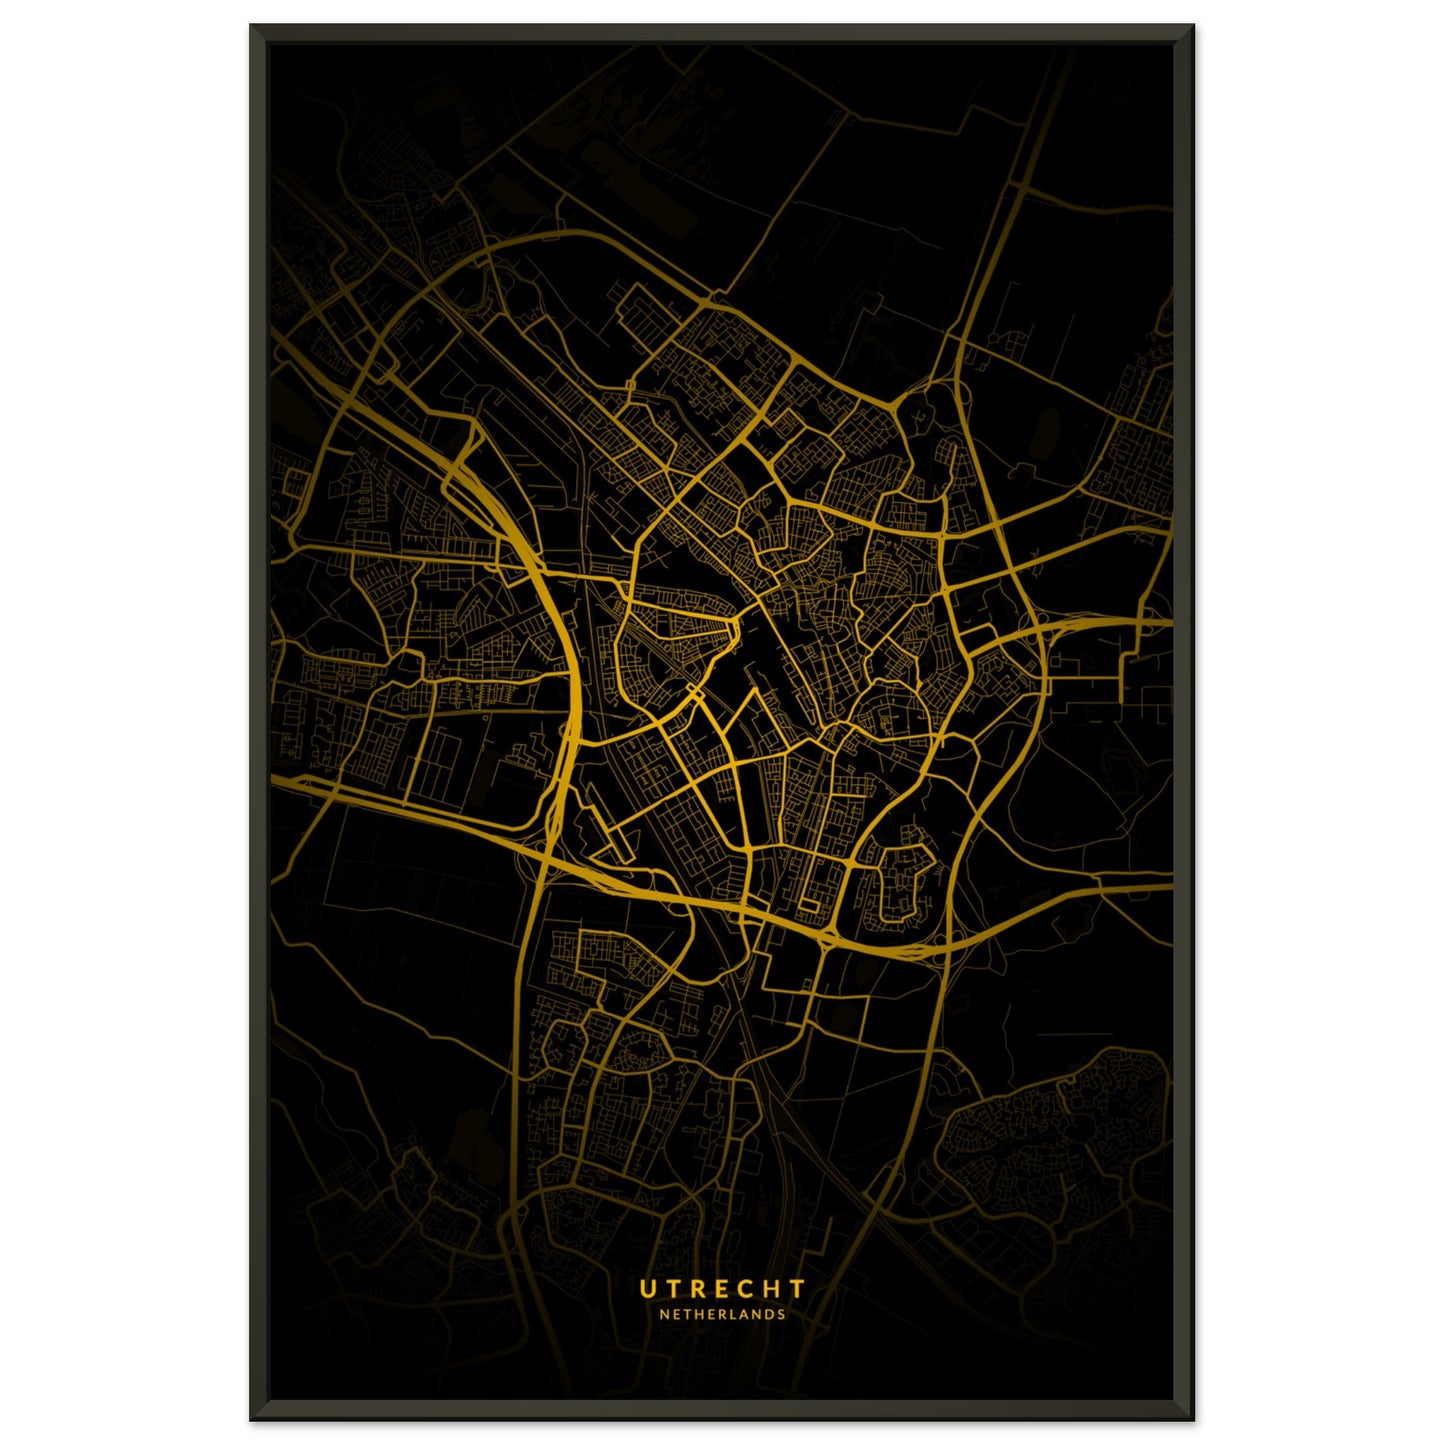 Utrecht map